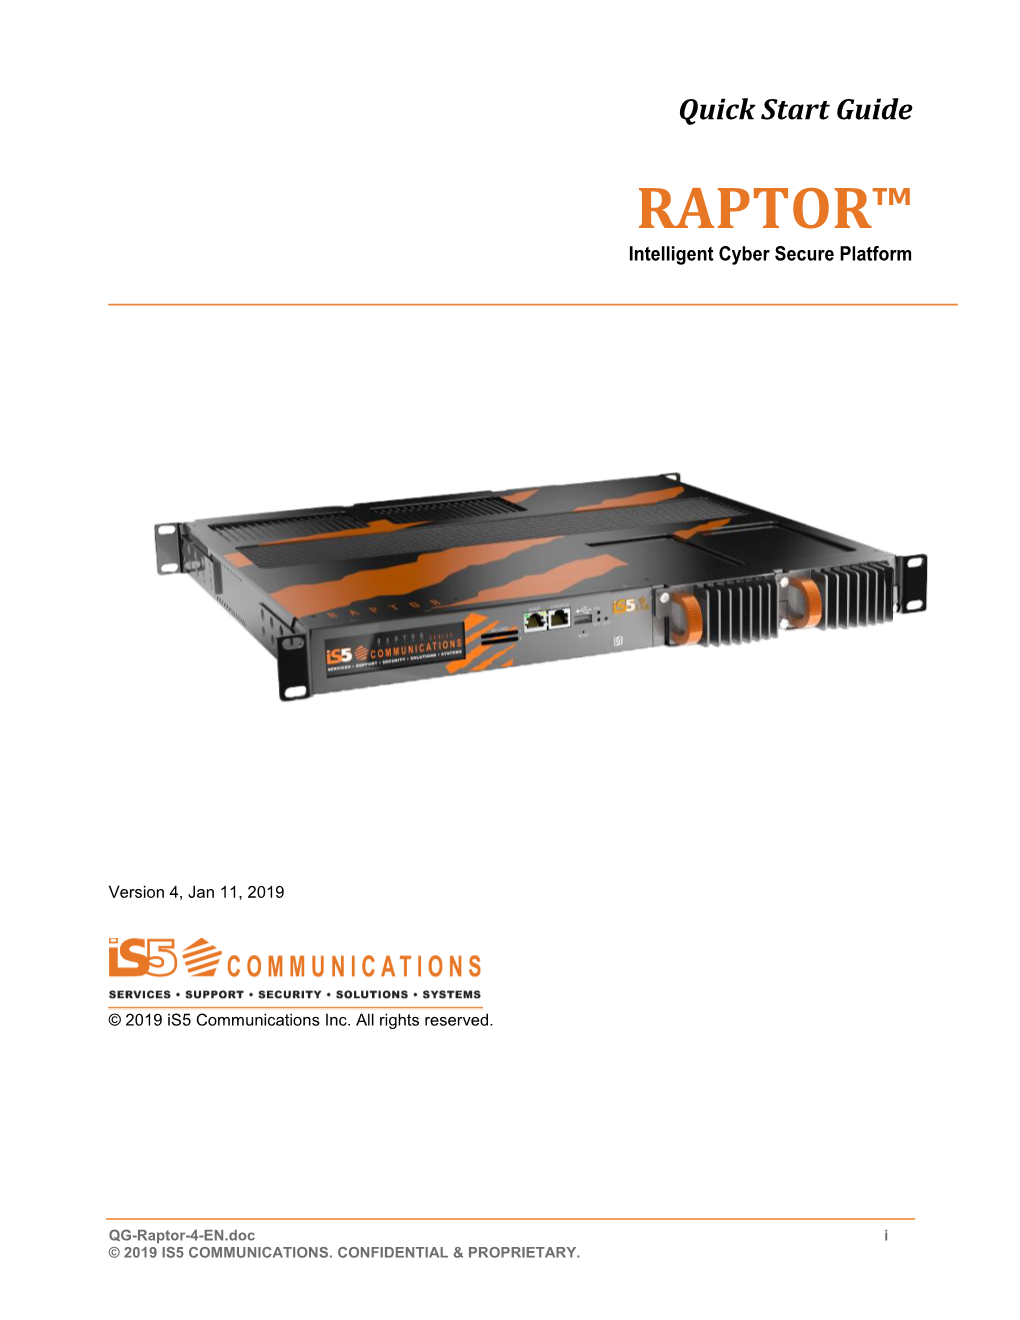 RAPTOR™ Intelligent Cyber Secure Platform